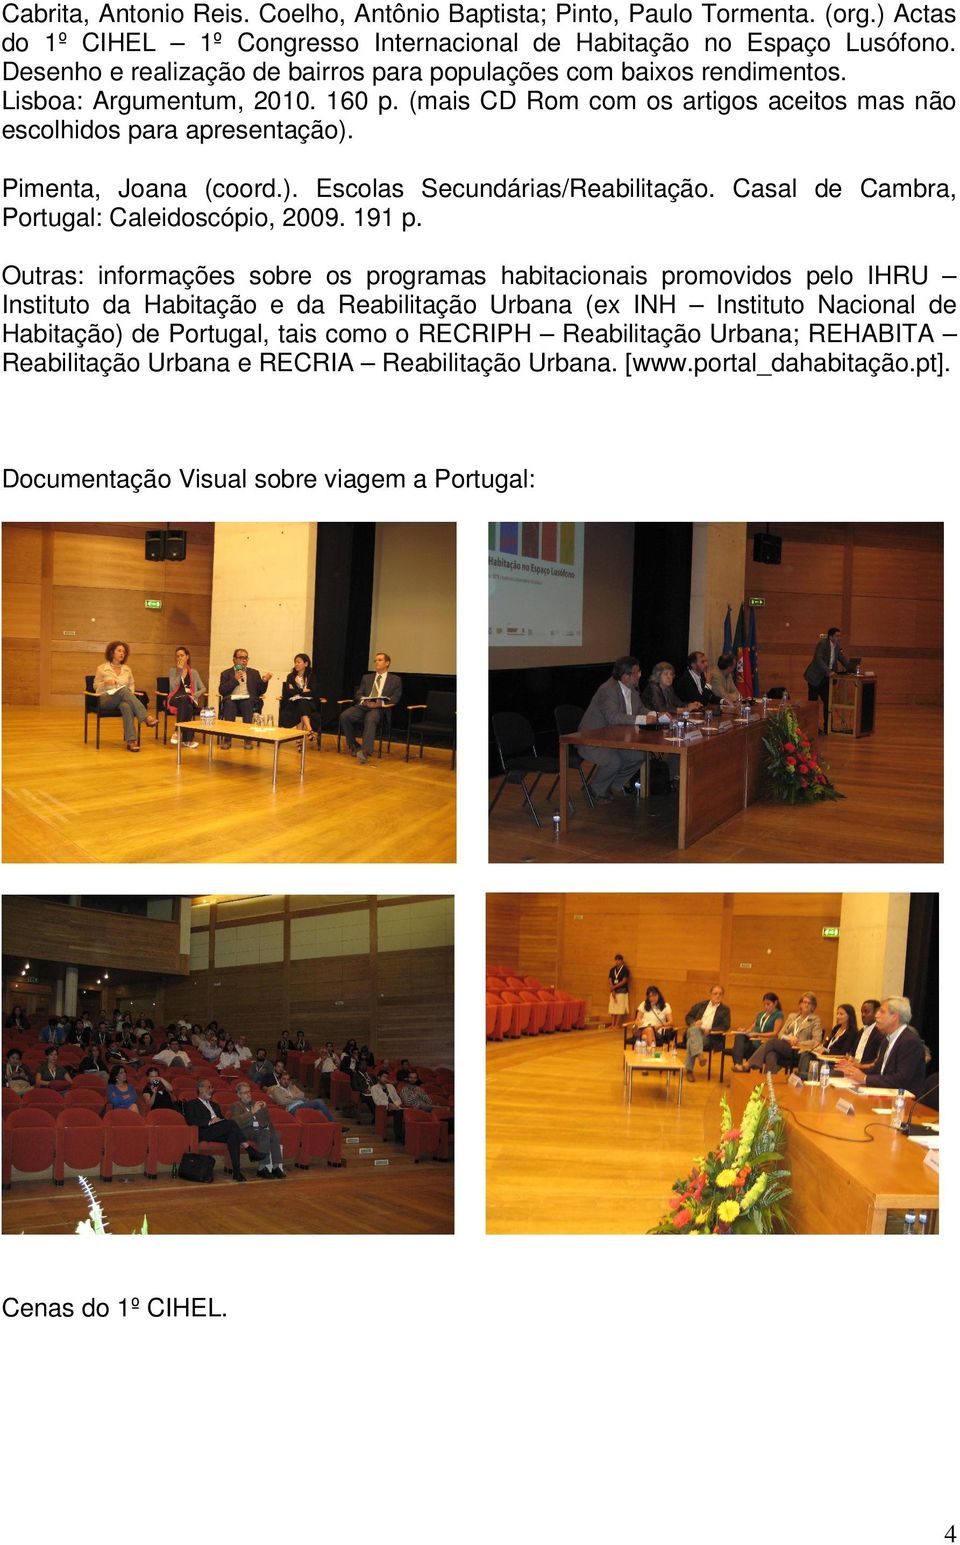 Pimenta, Joana (coord.). Escolas Secundárias/Reabilitação. Casal de Cambra, Portugal: Caleidoscópio, 2009. 191 p.